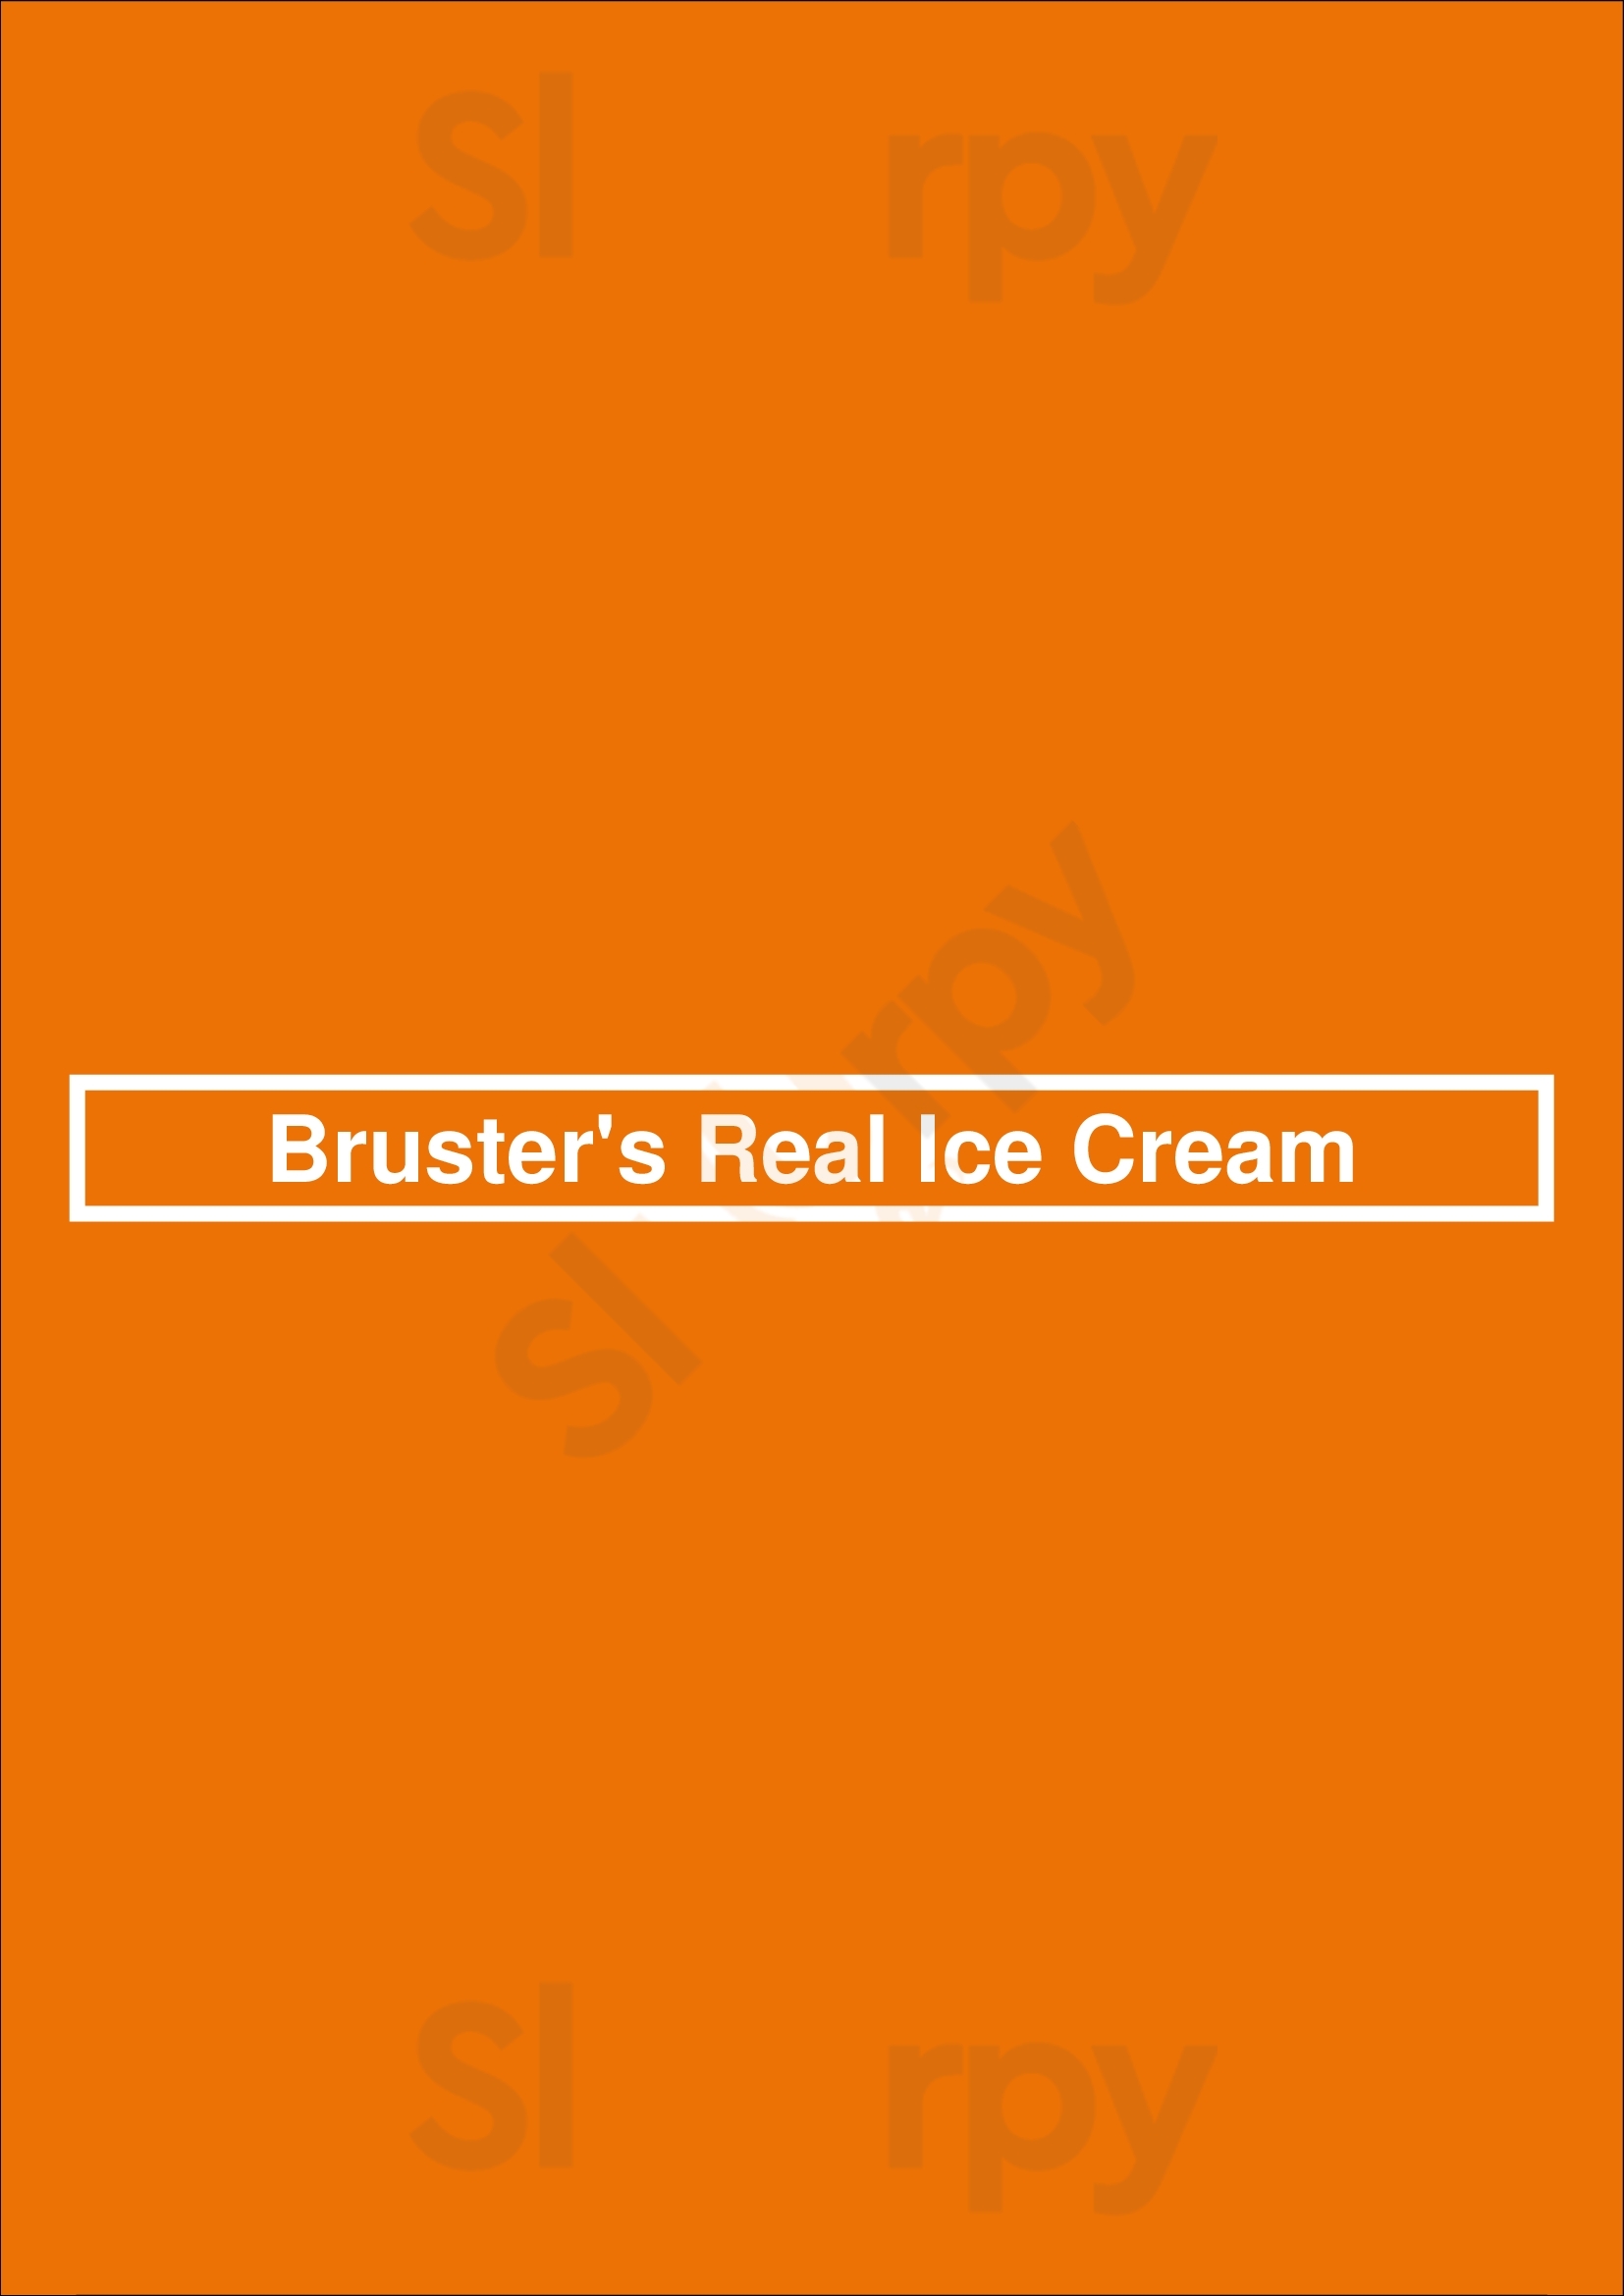 Bruster's Real Ice Cream Tampa Menu - 1